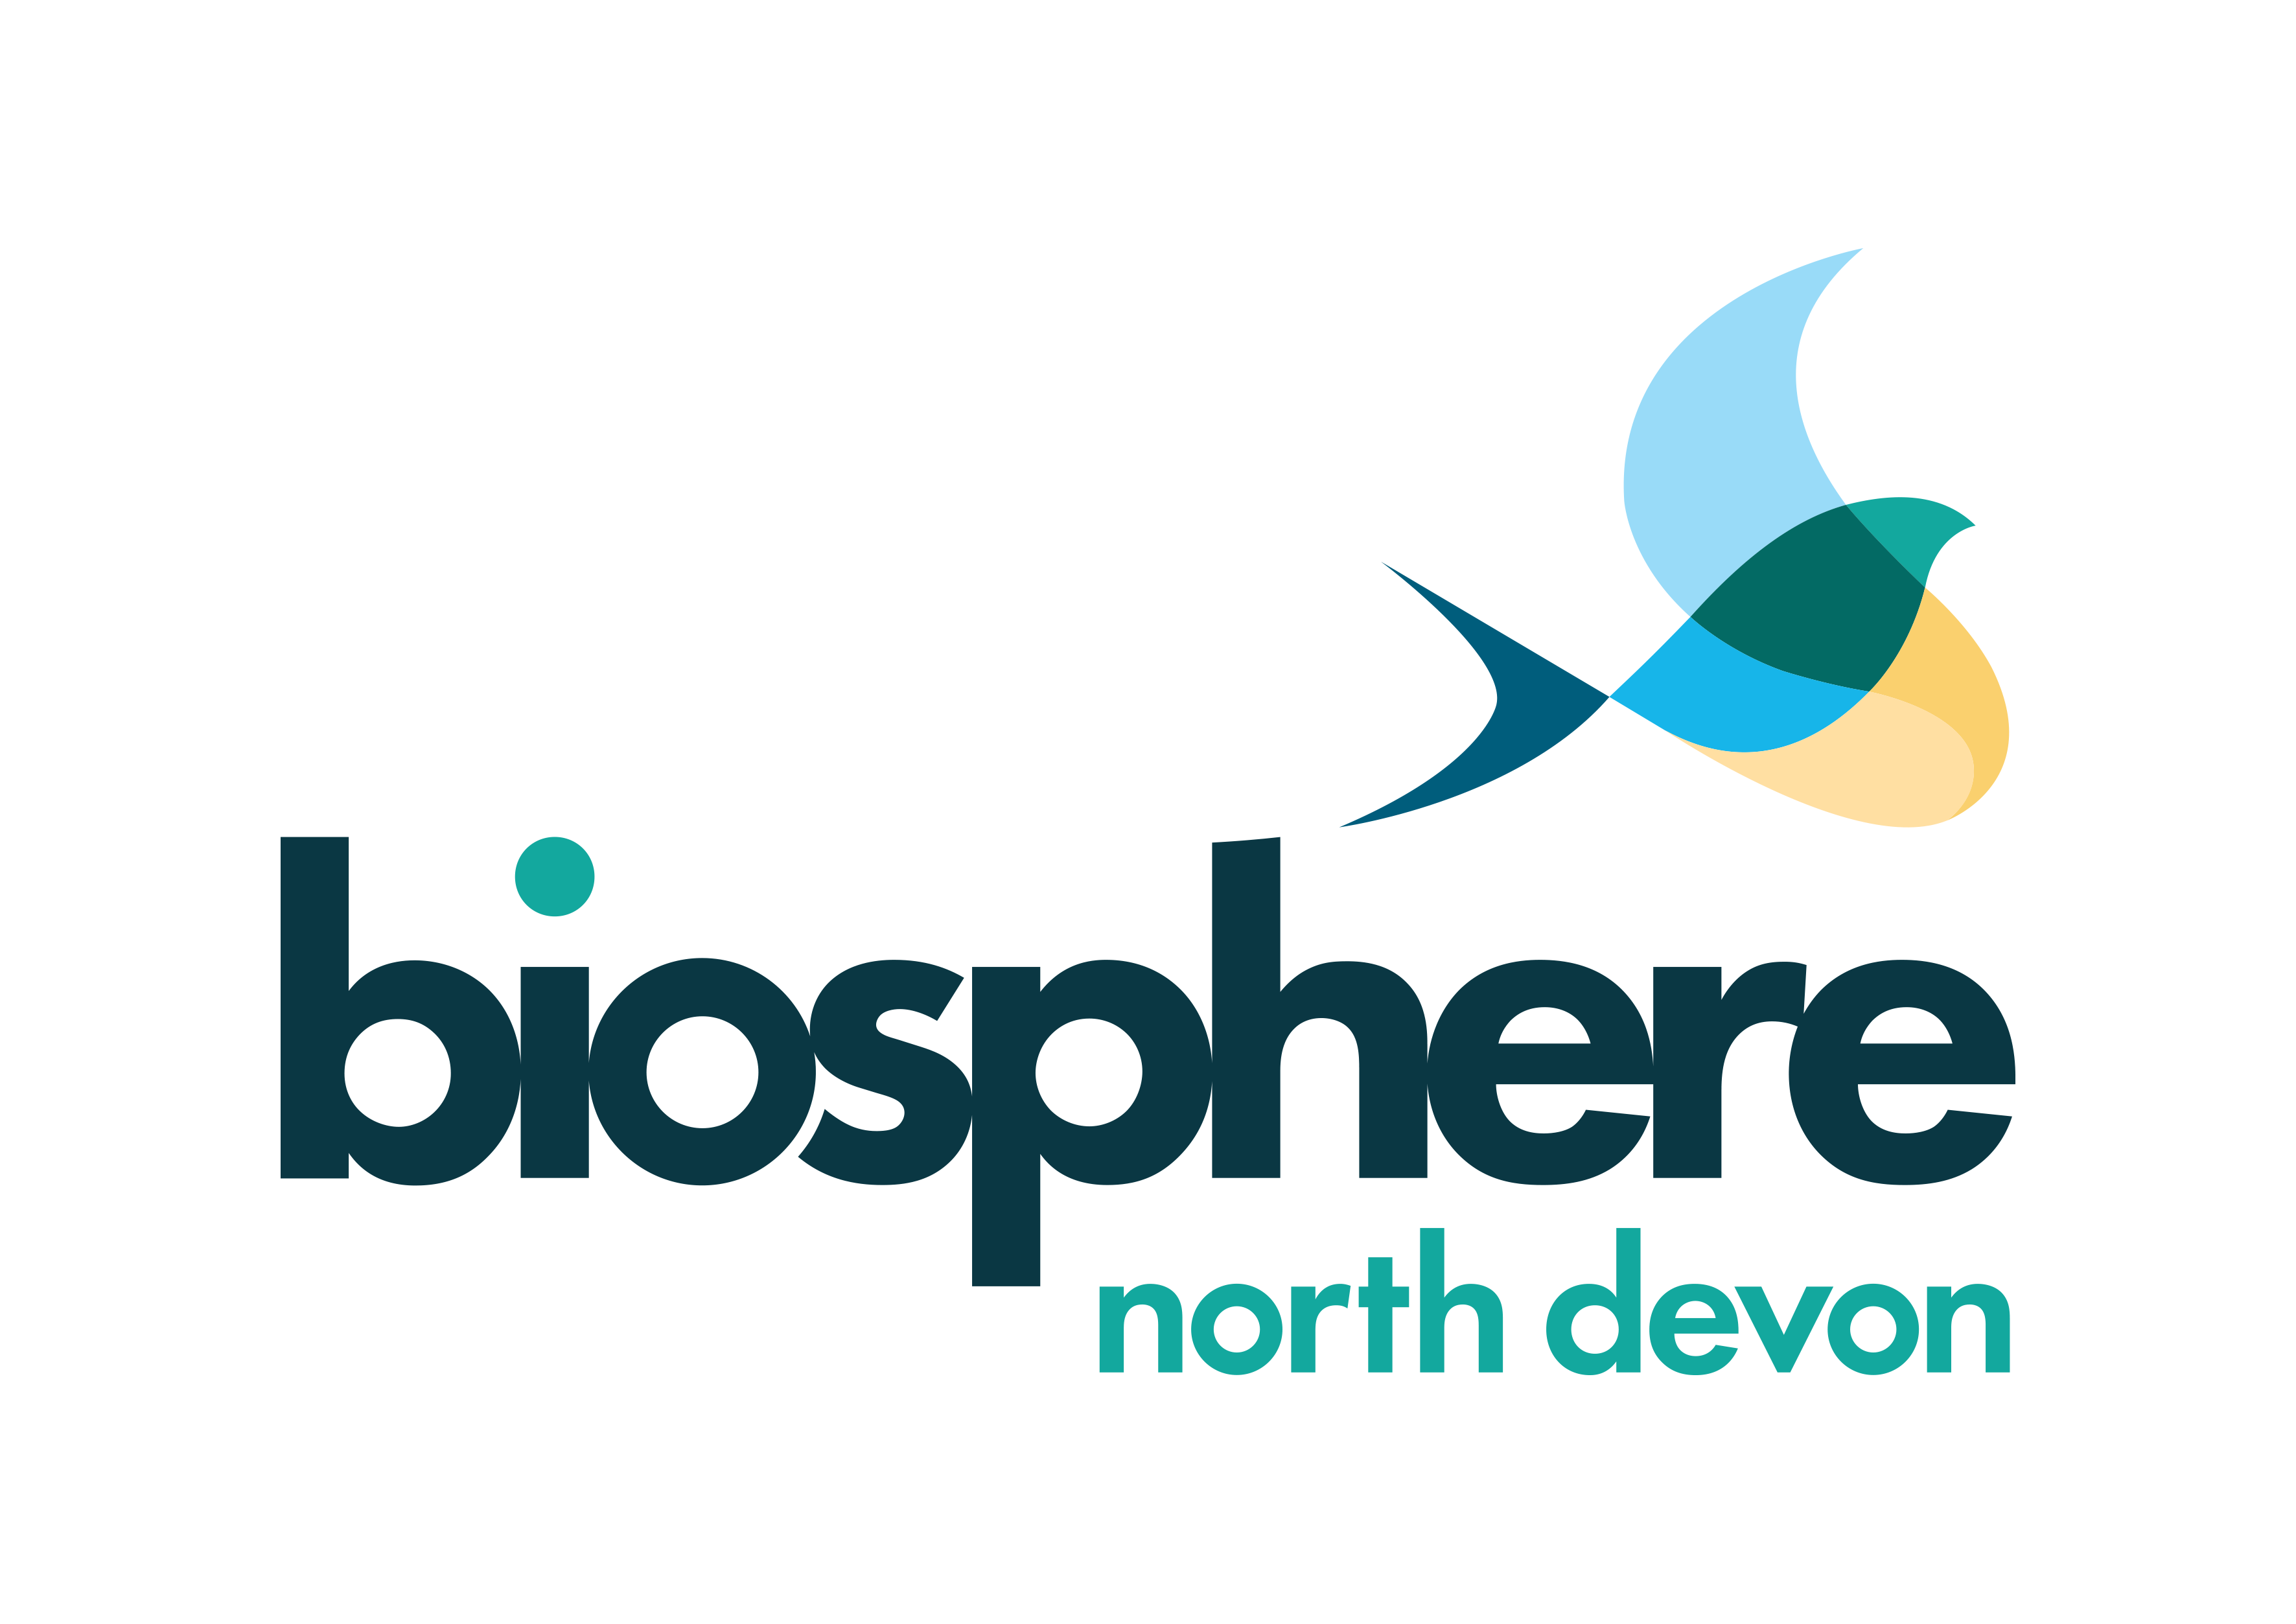 The North Devon Biosphere Foundation